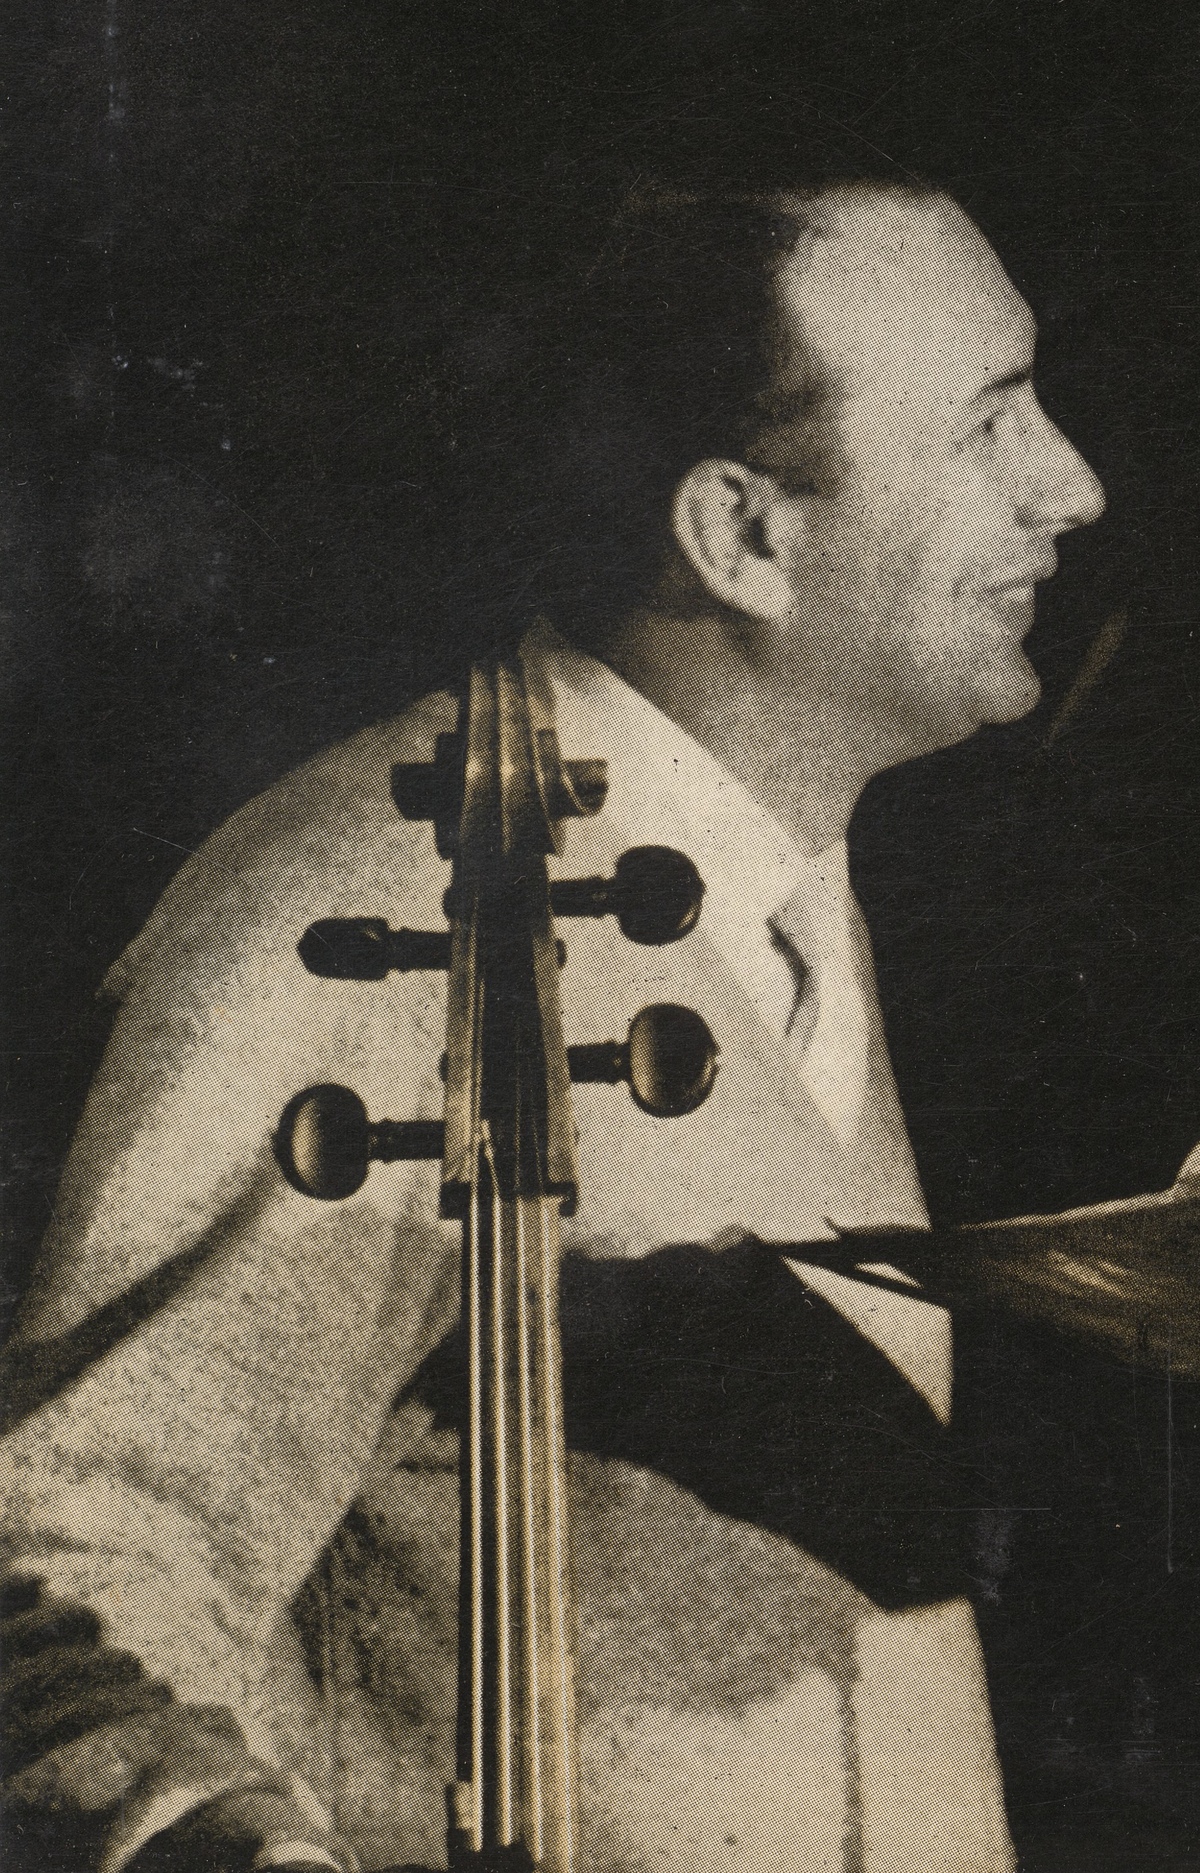 Maurice GENDRON, extrait d'un portrait fait par DON HUNSTEIN publié en 1961 au recto de la pochette du disque Epic LC 3817